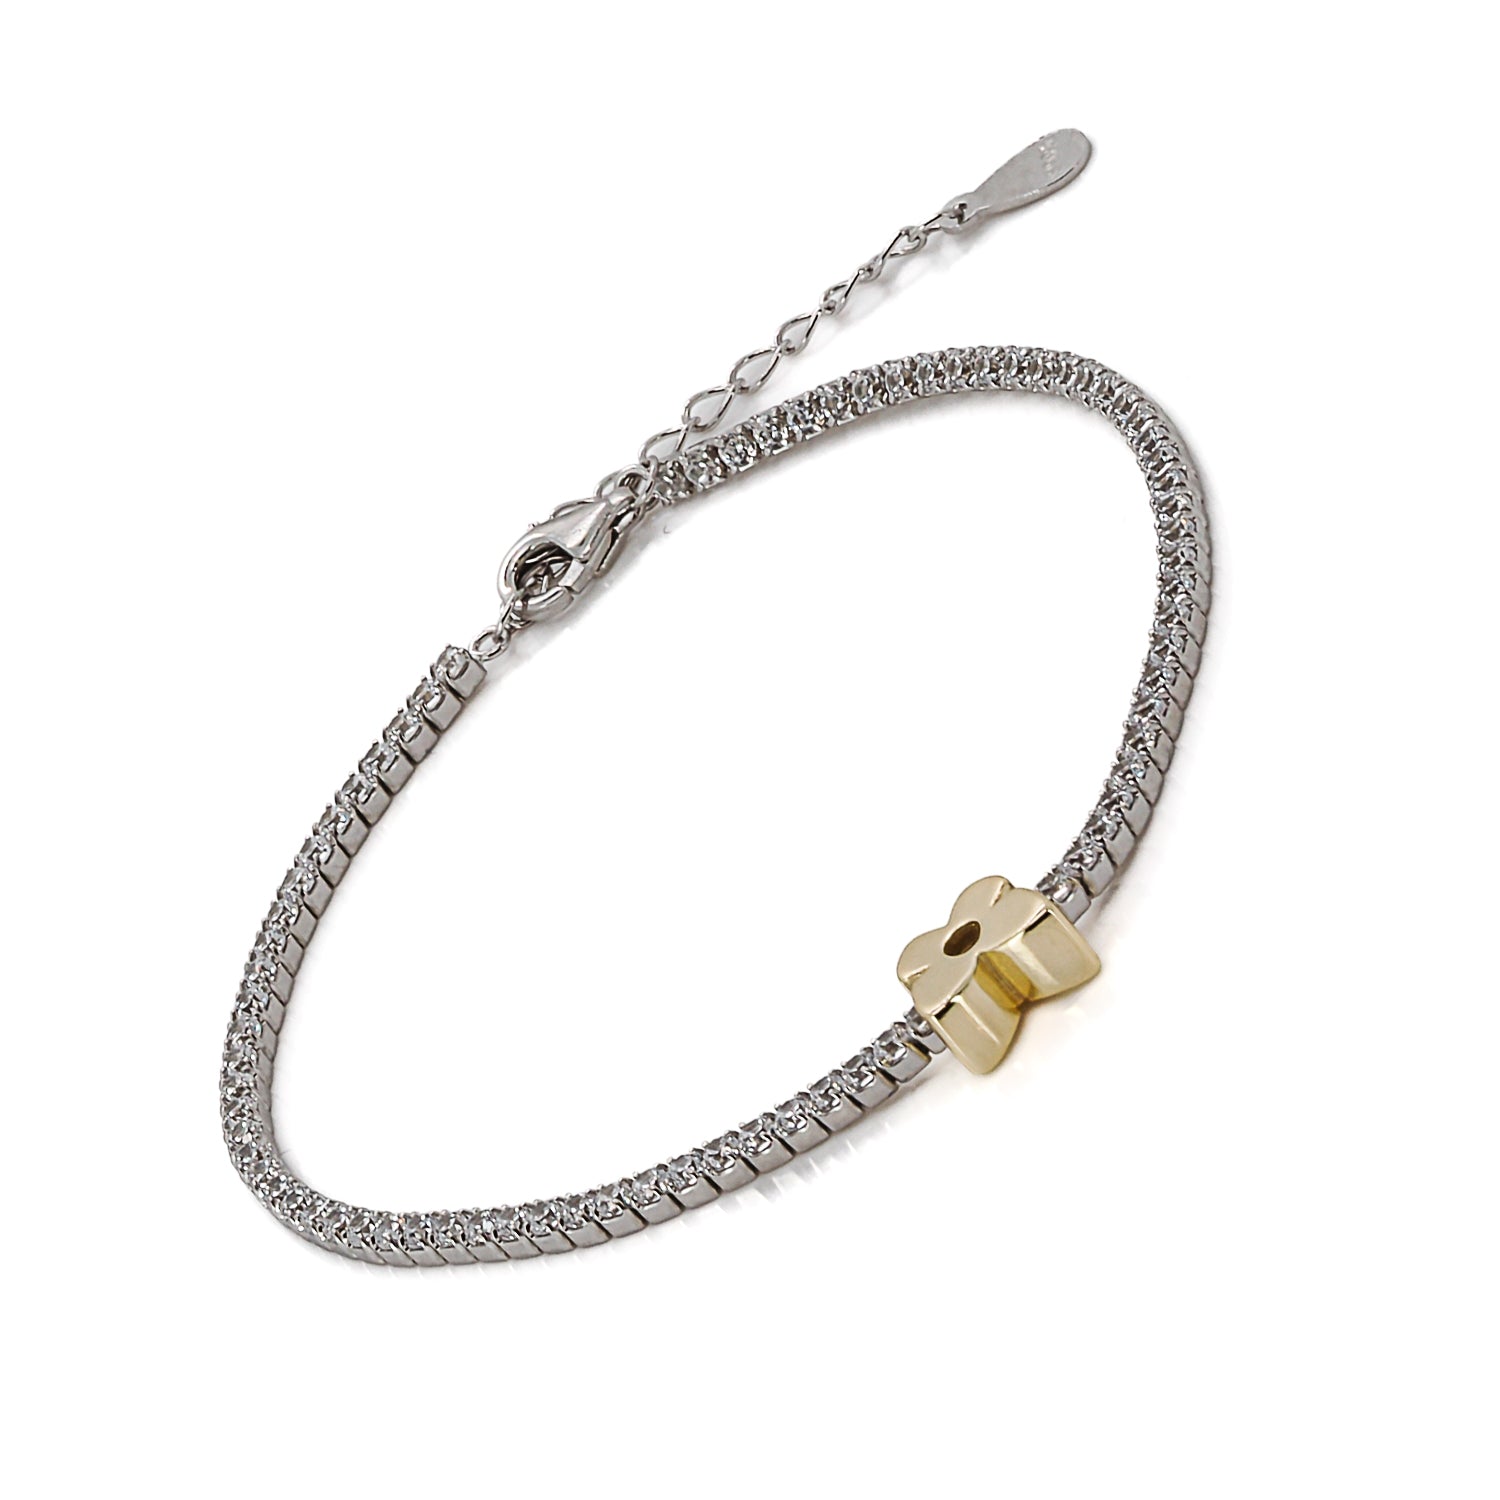 Adjustable beauty: Gold Butterfly Bracelet's versatility.